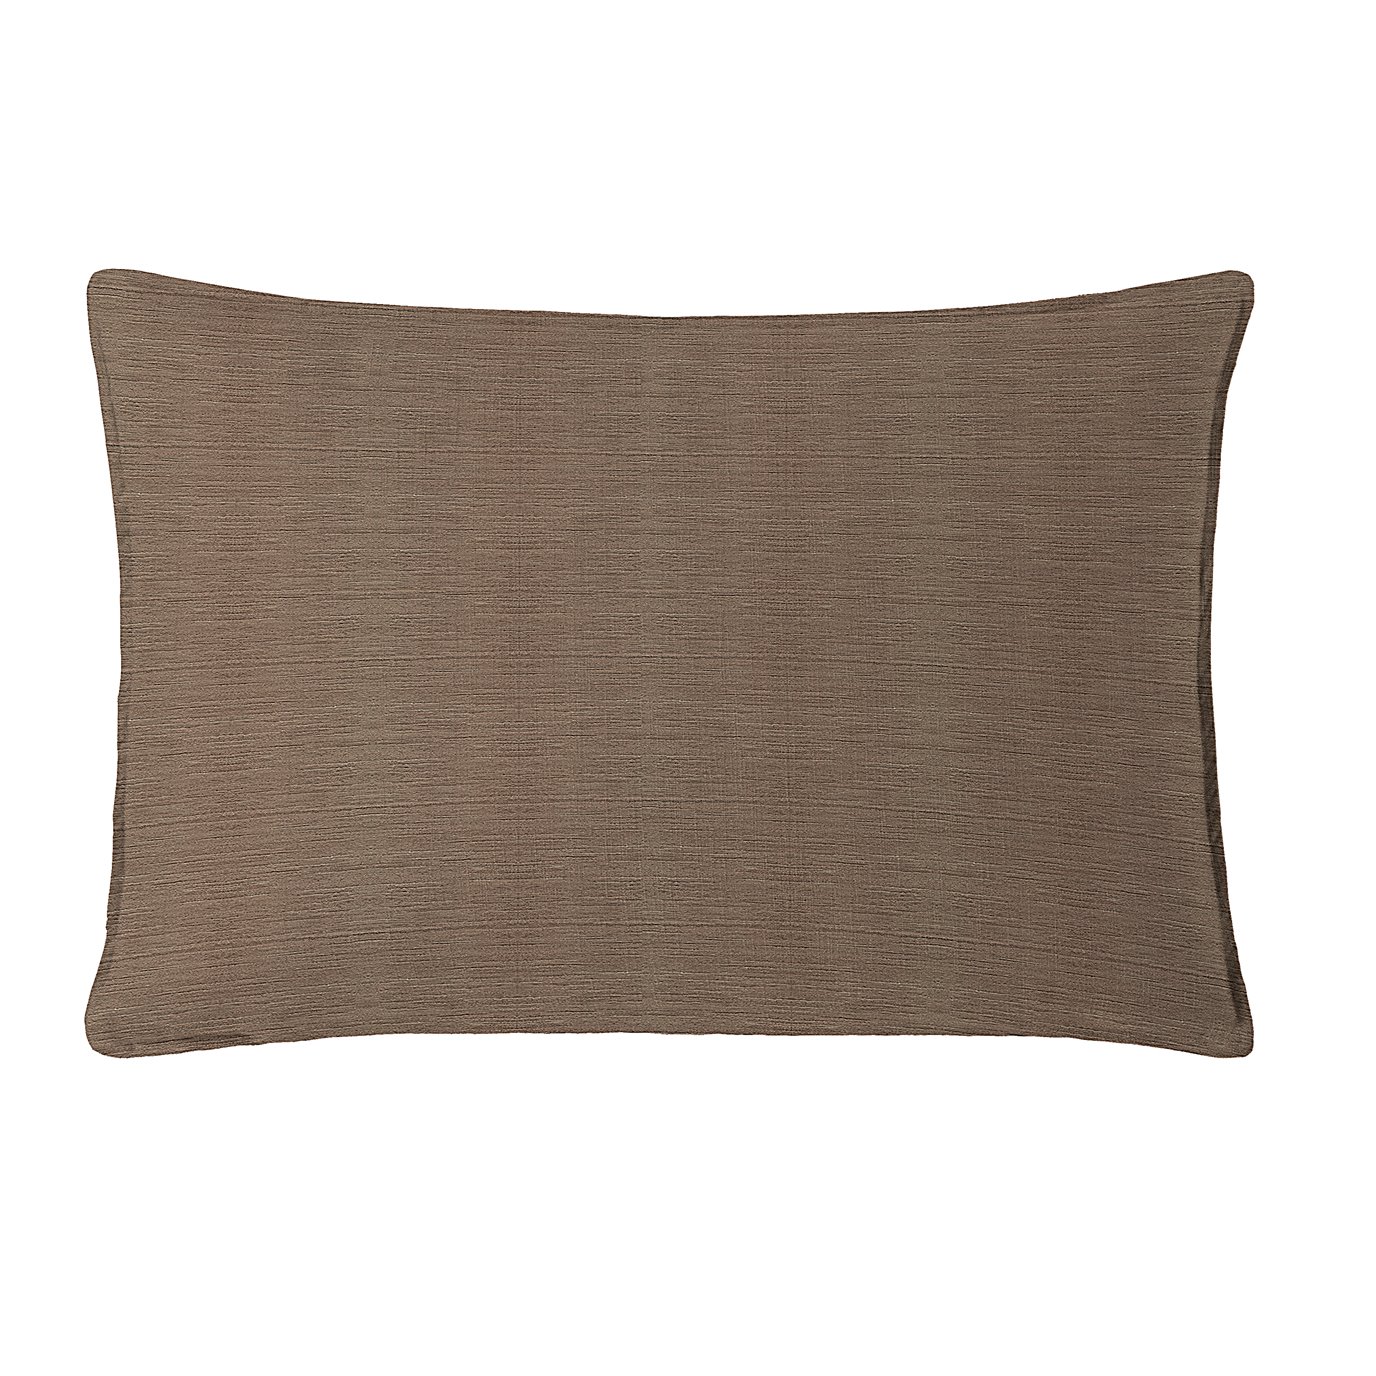 McGregor Chocolate Rectangle Pillow 14"x22"